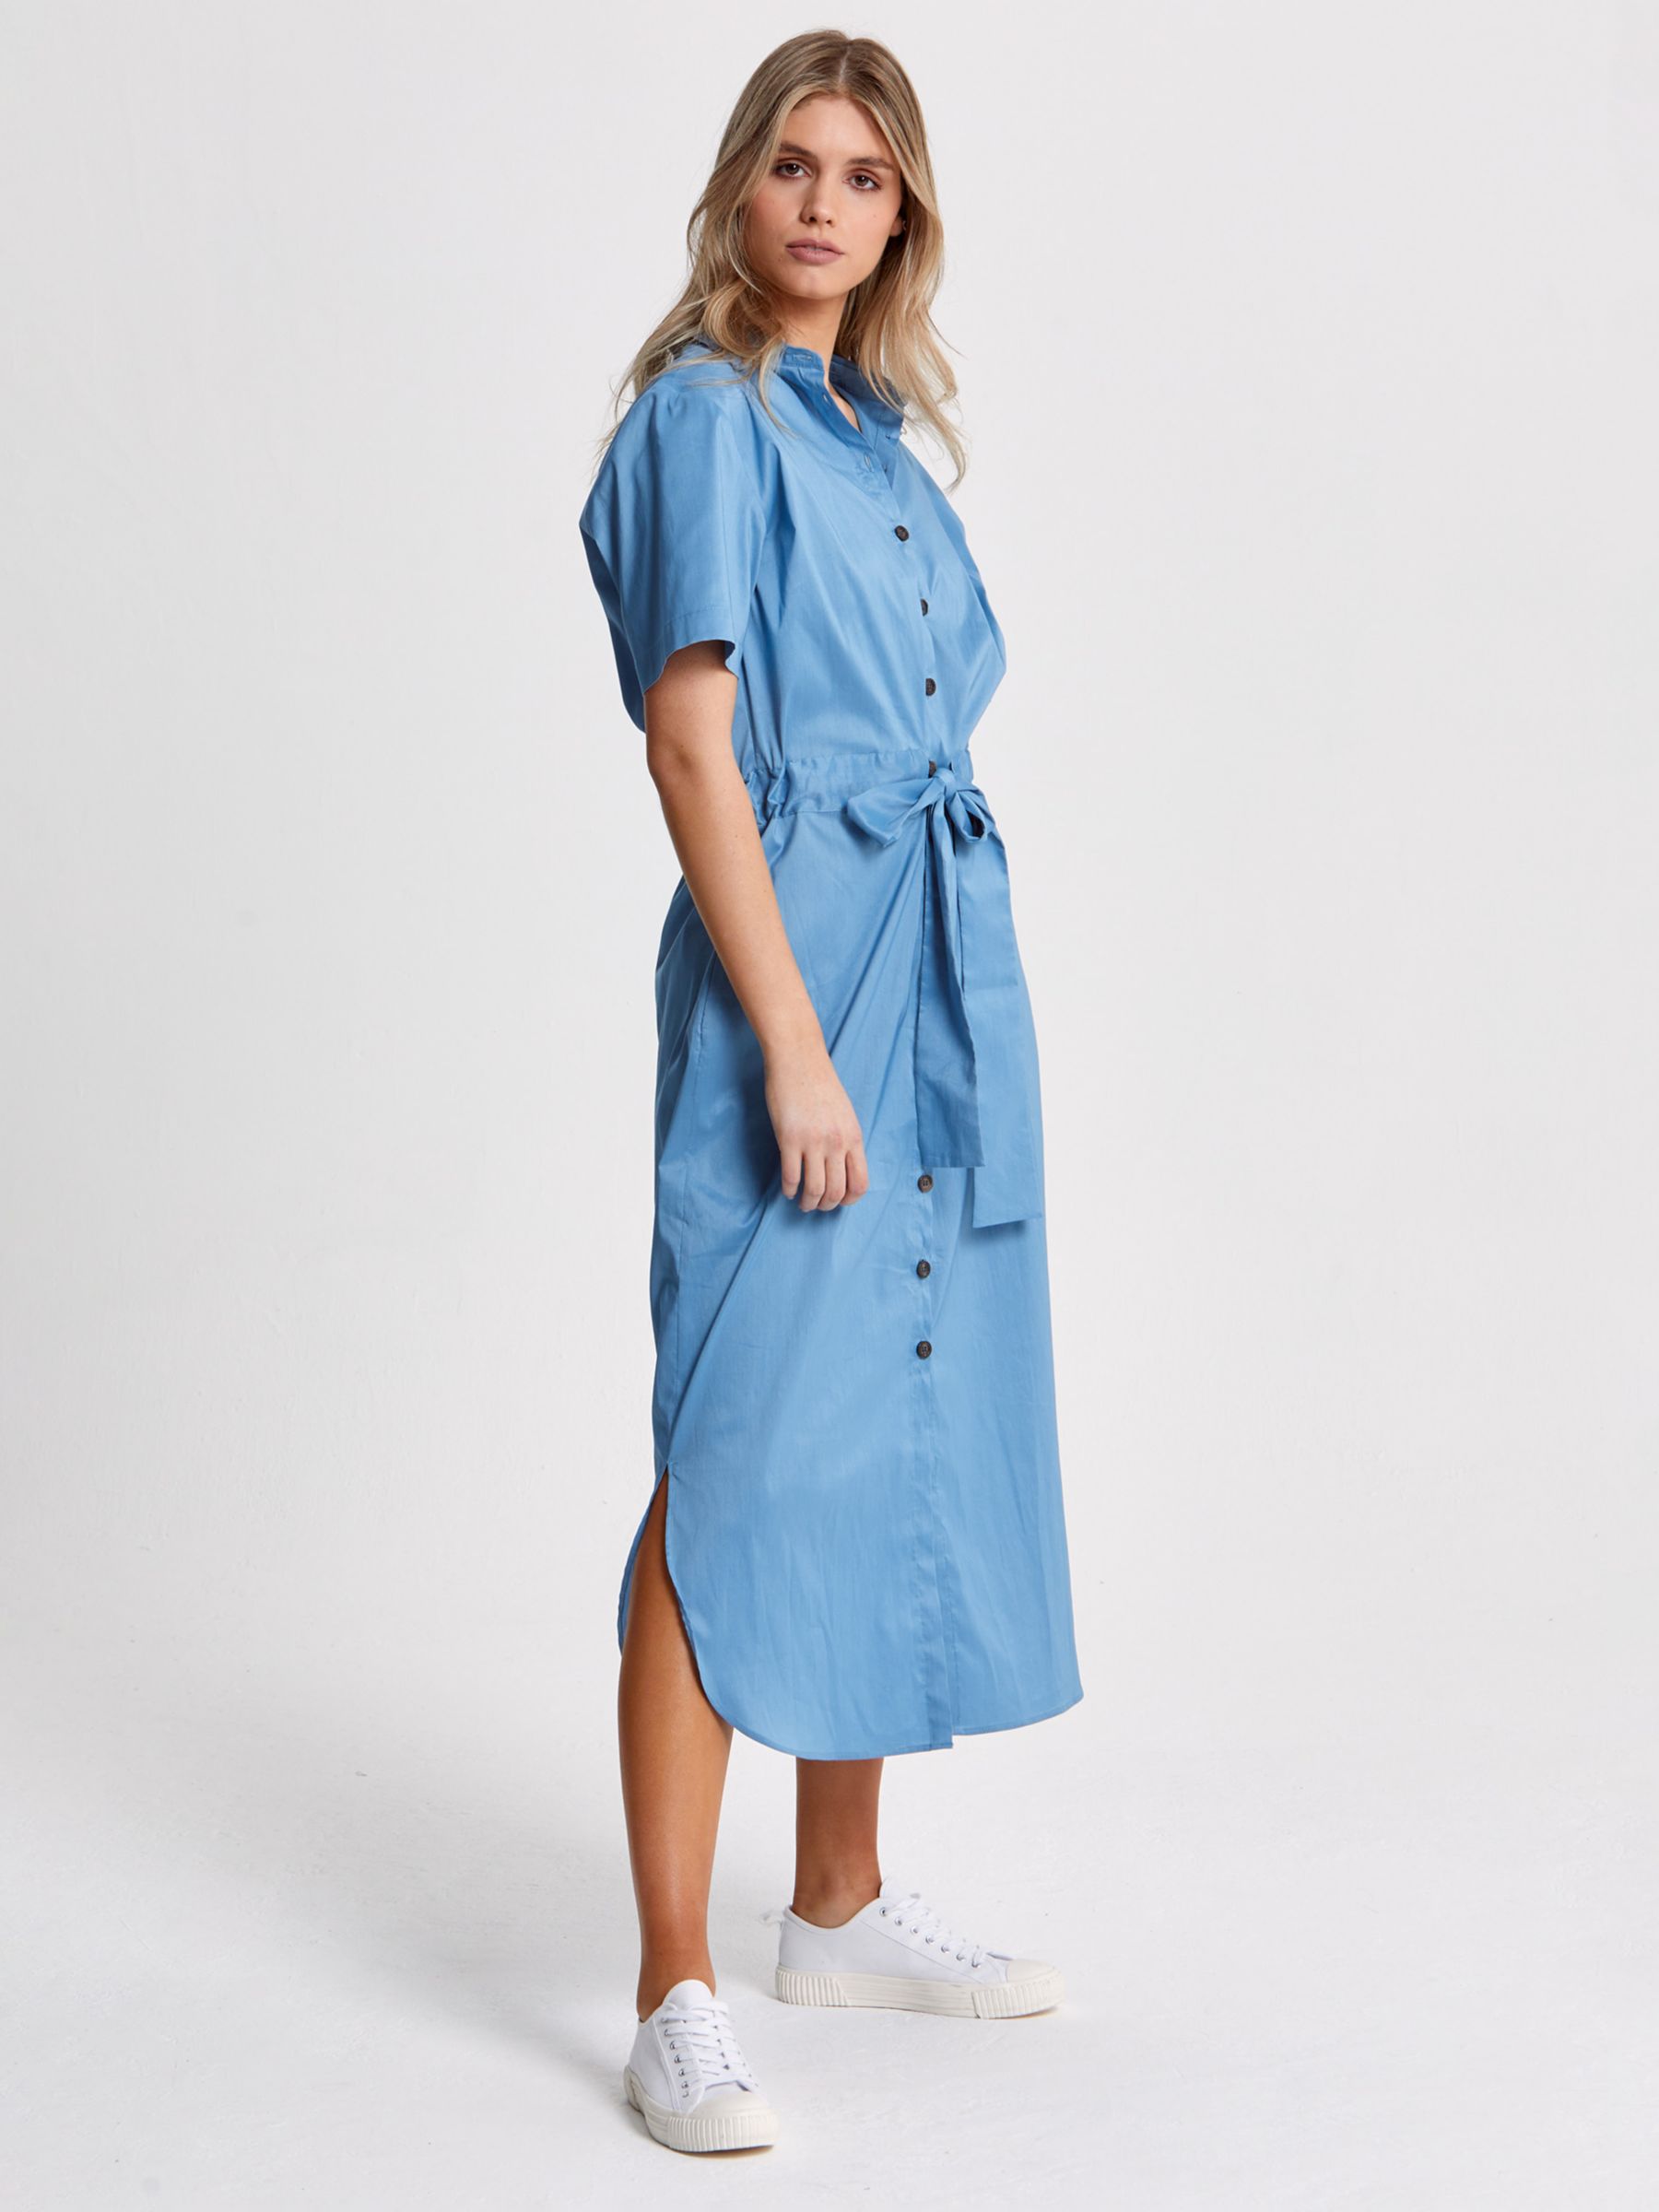 Helen McAlinden Arabella Plain Shirt Dress, Sky Blue, S